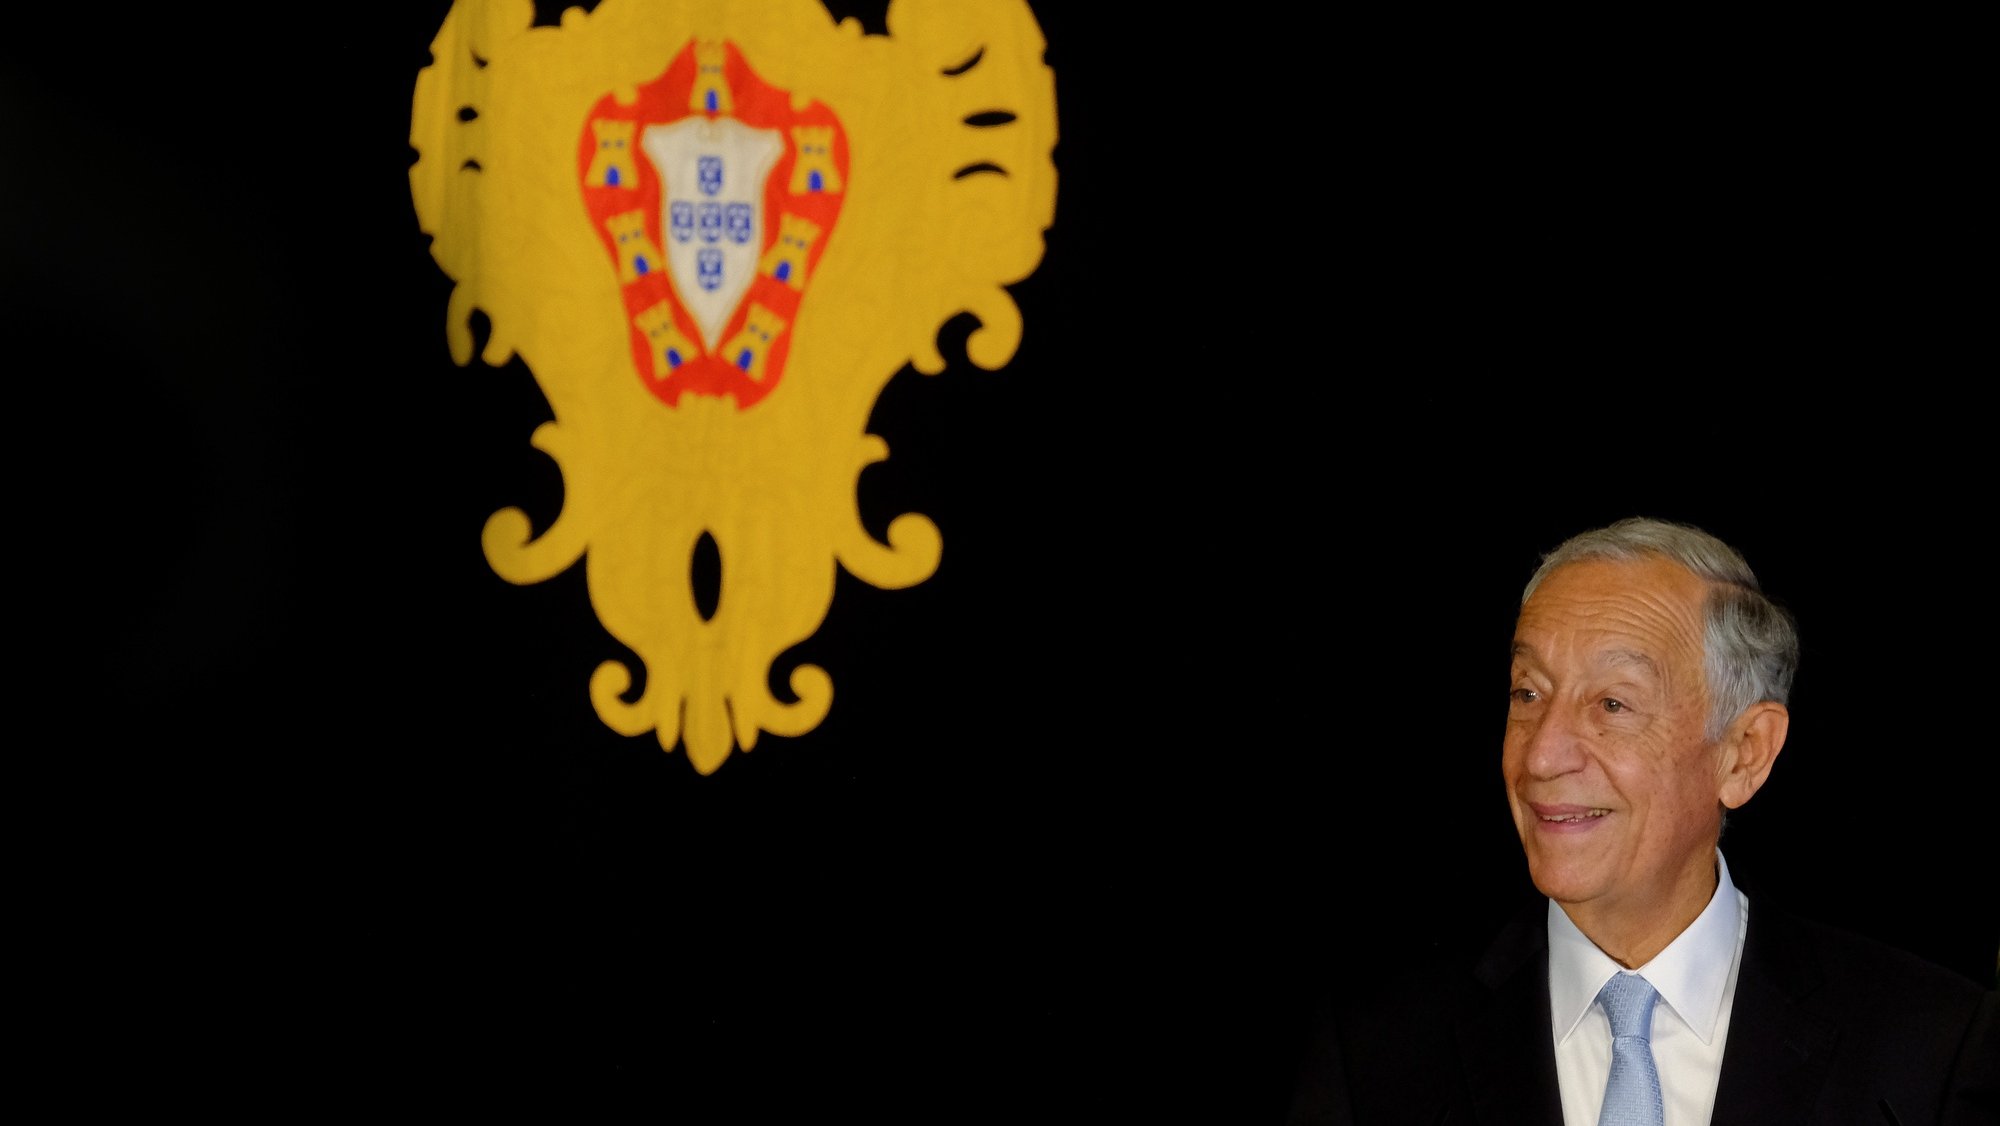 Presidente da República, Marcelo Rebelo de Sousa